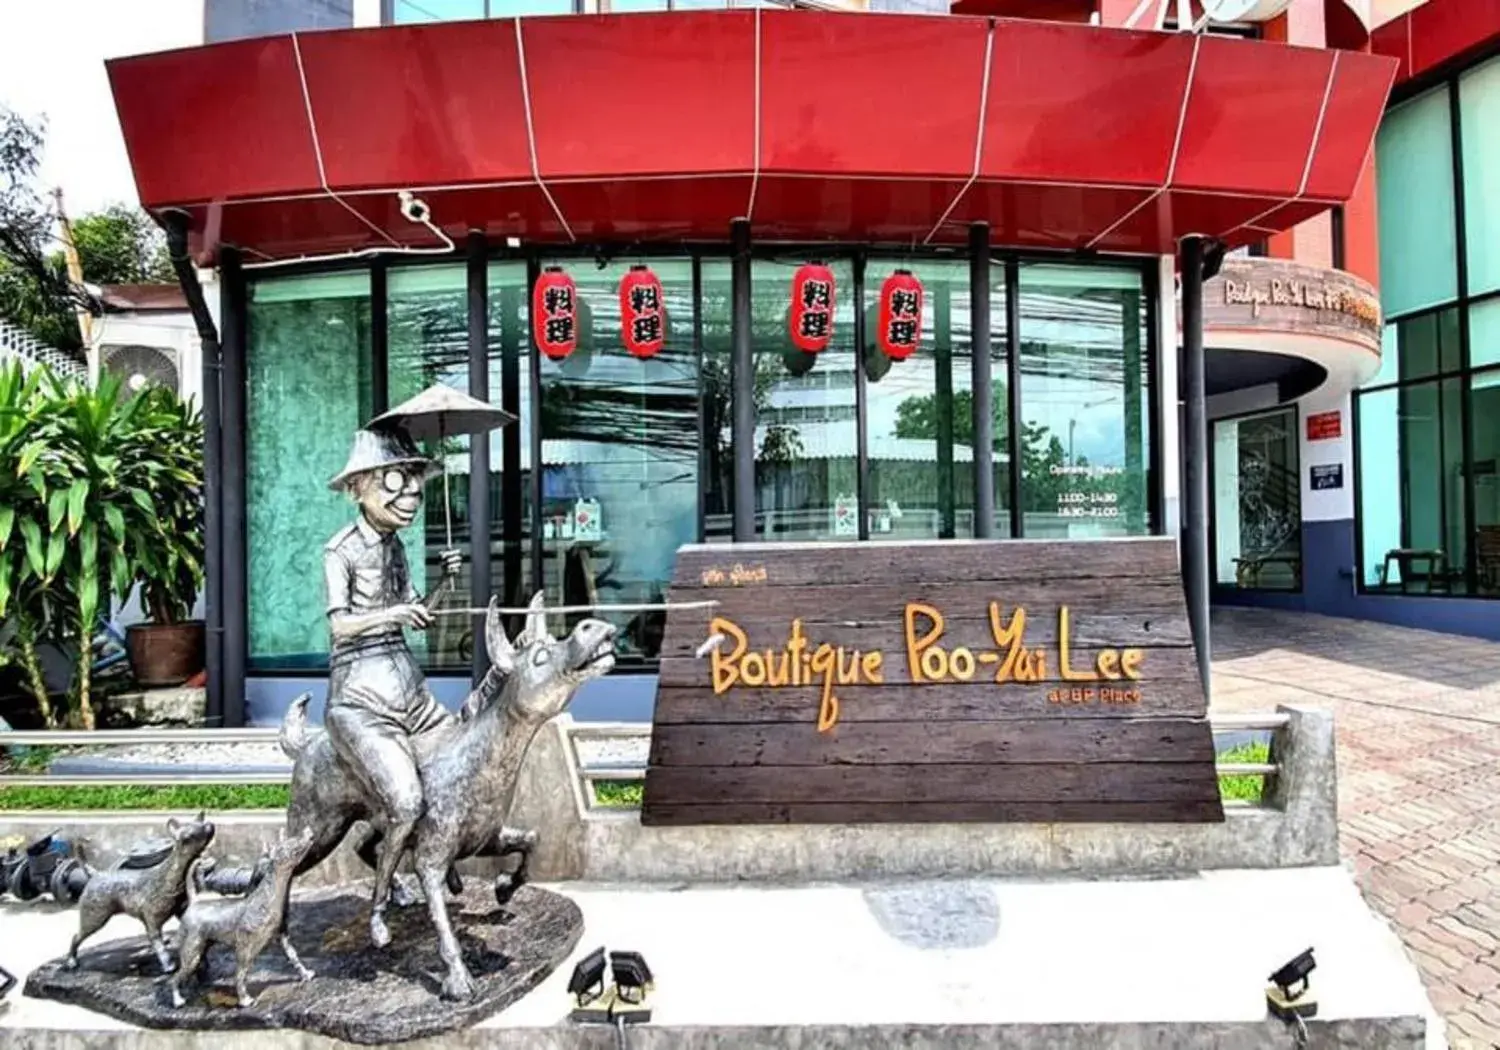 Facade/entrance in Boutique Poo-Yai Ma @ BP Place